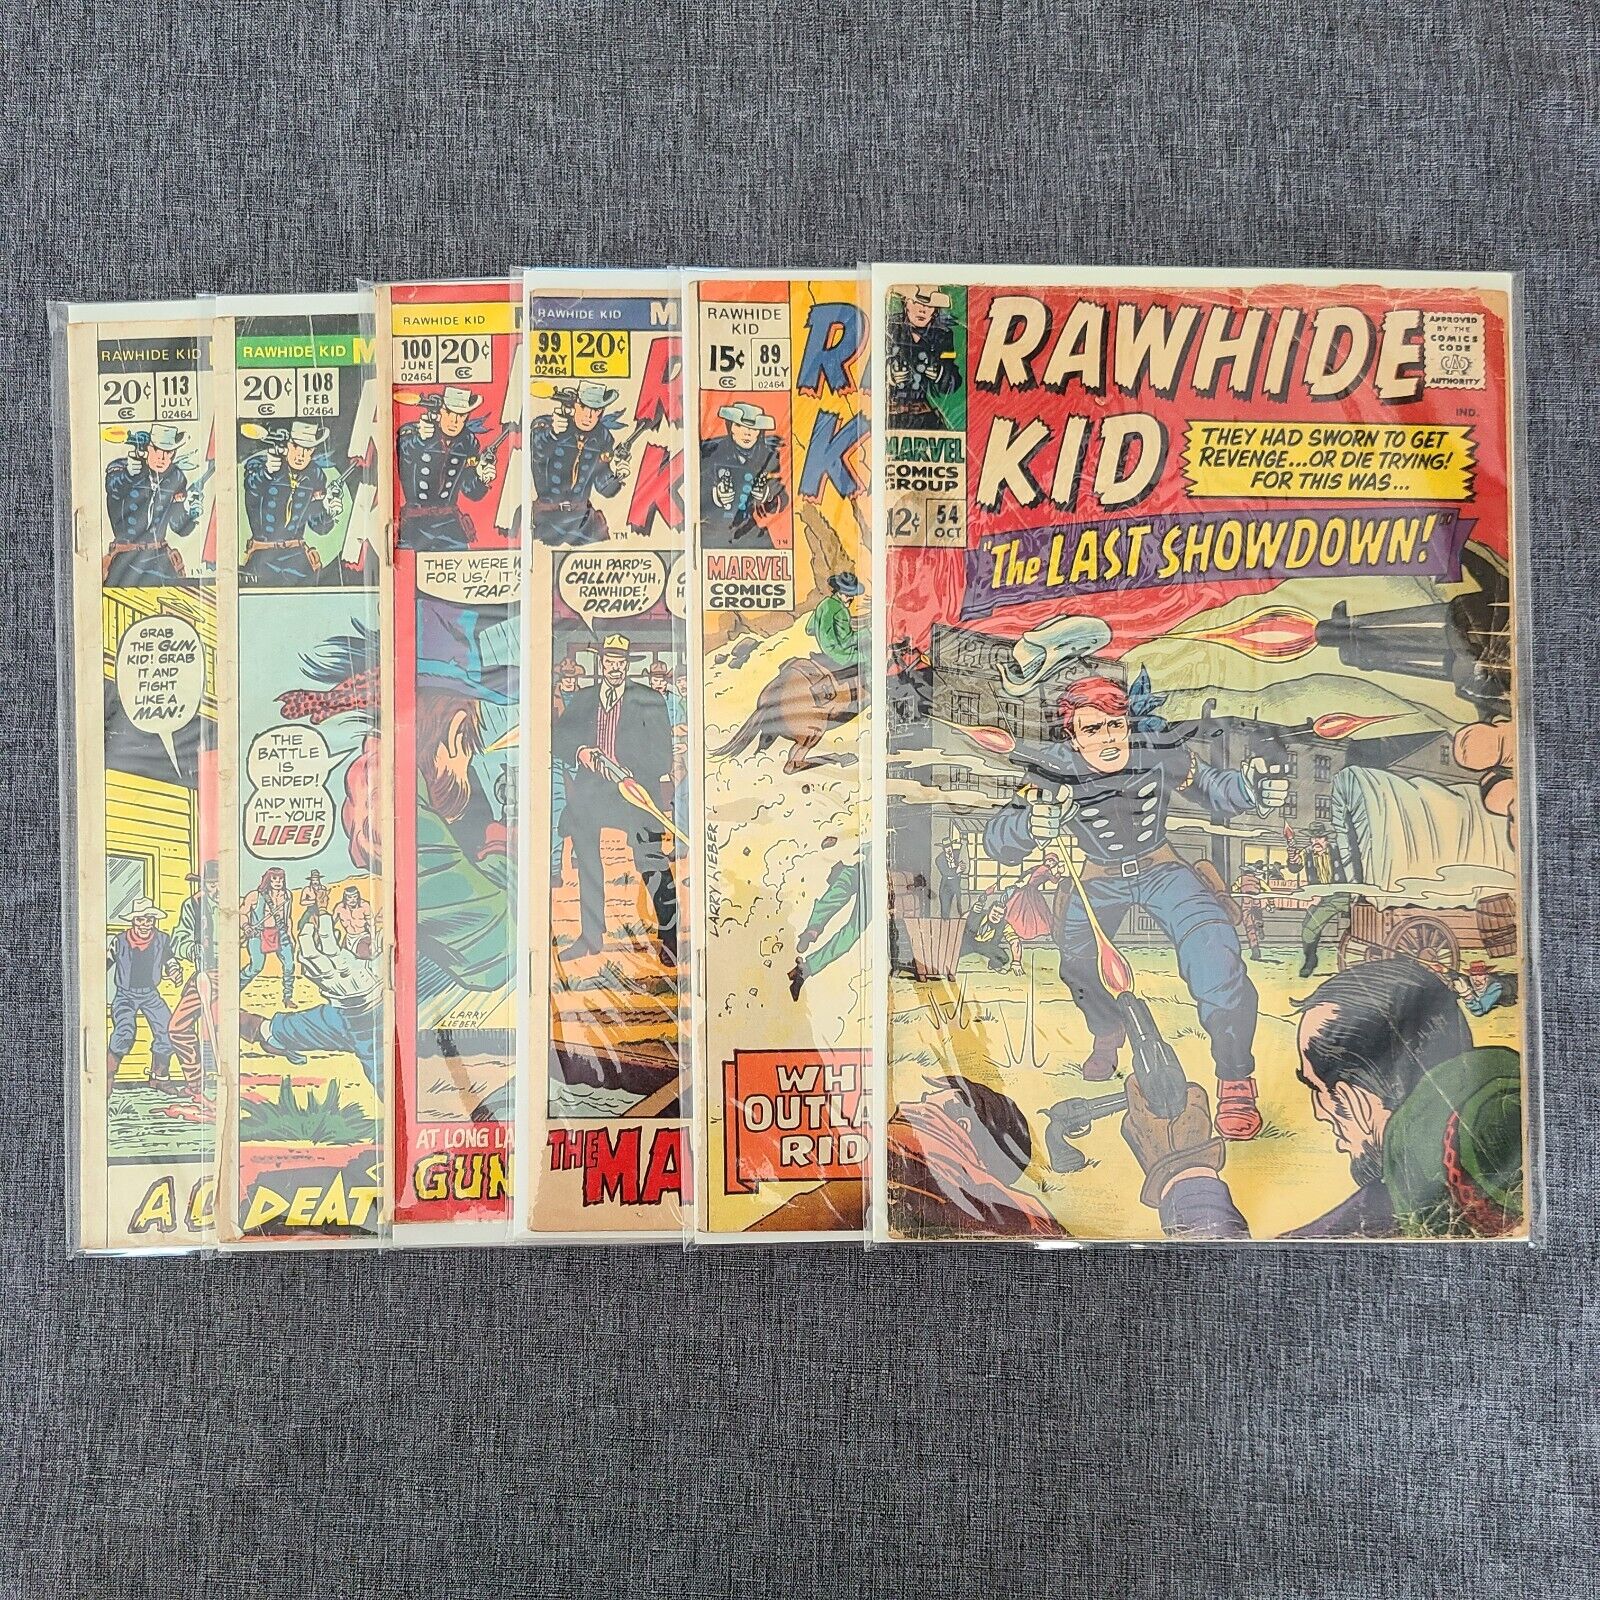 Rawhide Kid (Lot of 6), #54,89,99,100,108,113, Marvel Comics 1966-1973